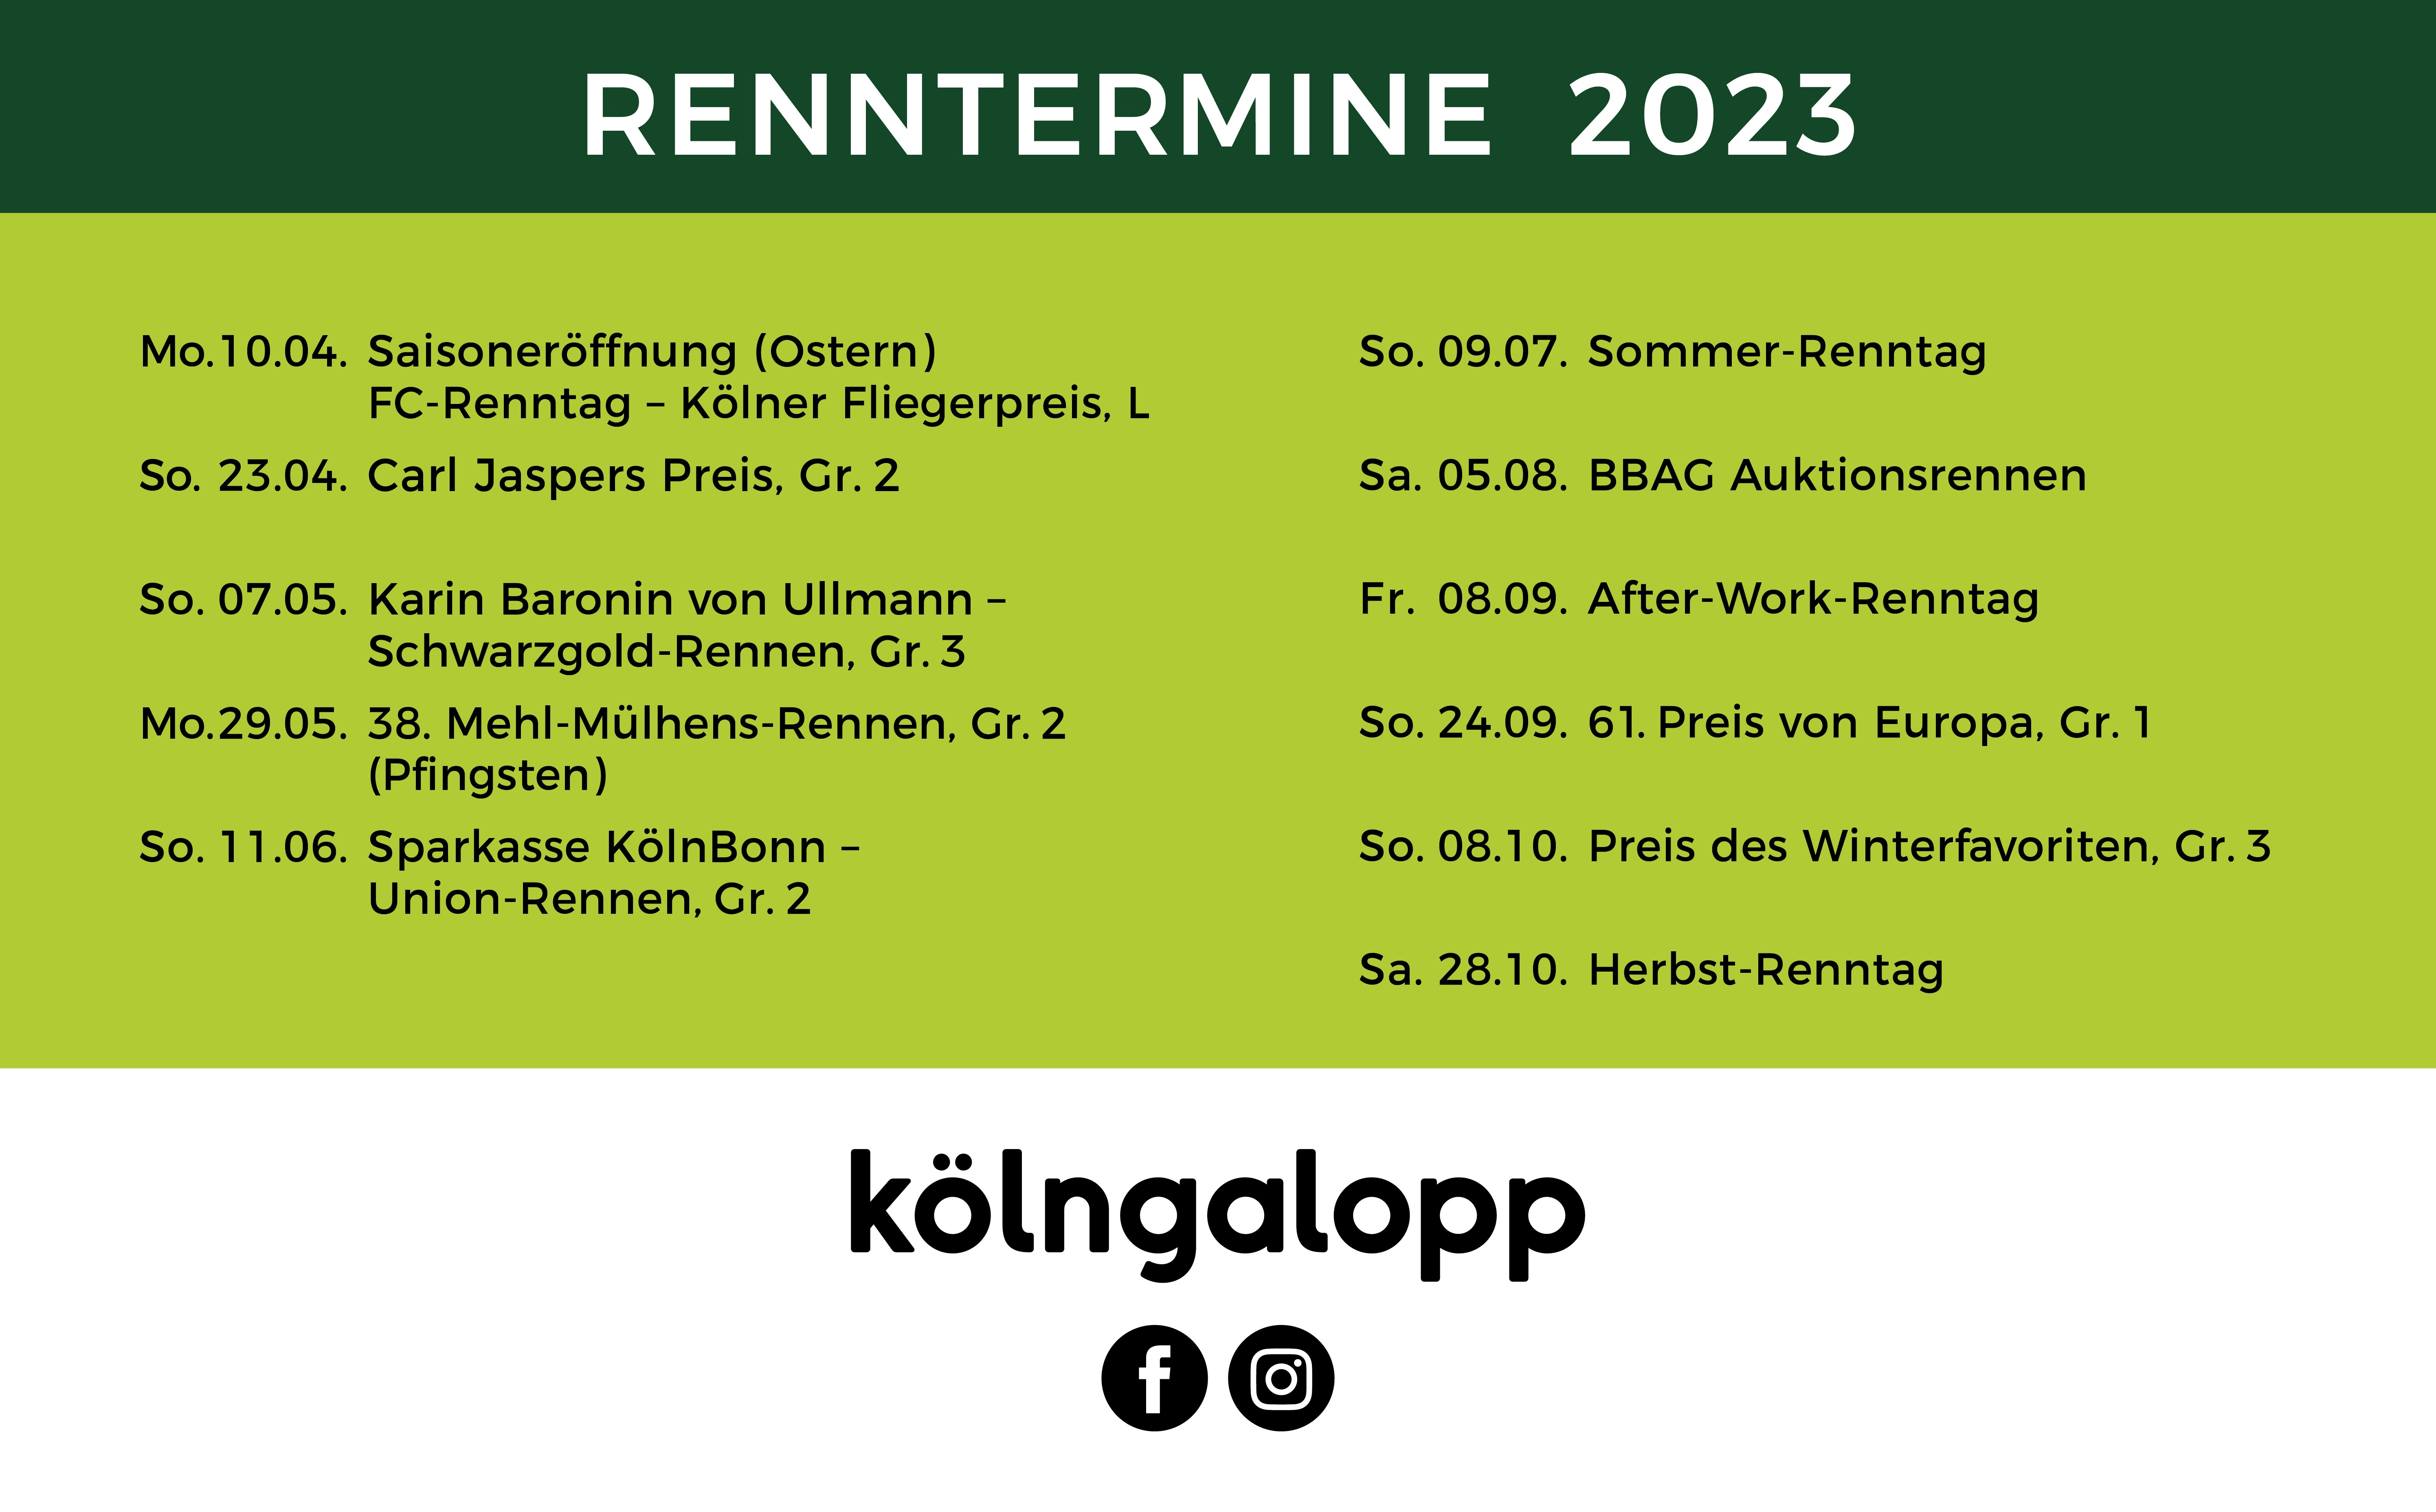 Renntermine-Board 2023.jpg